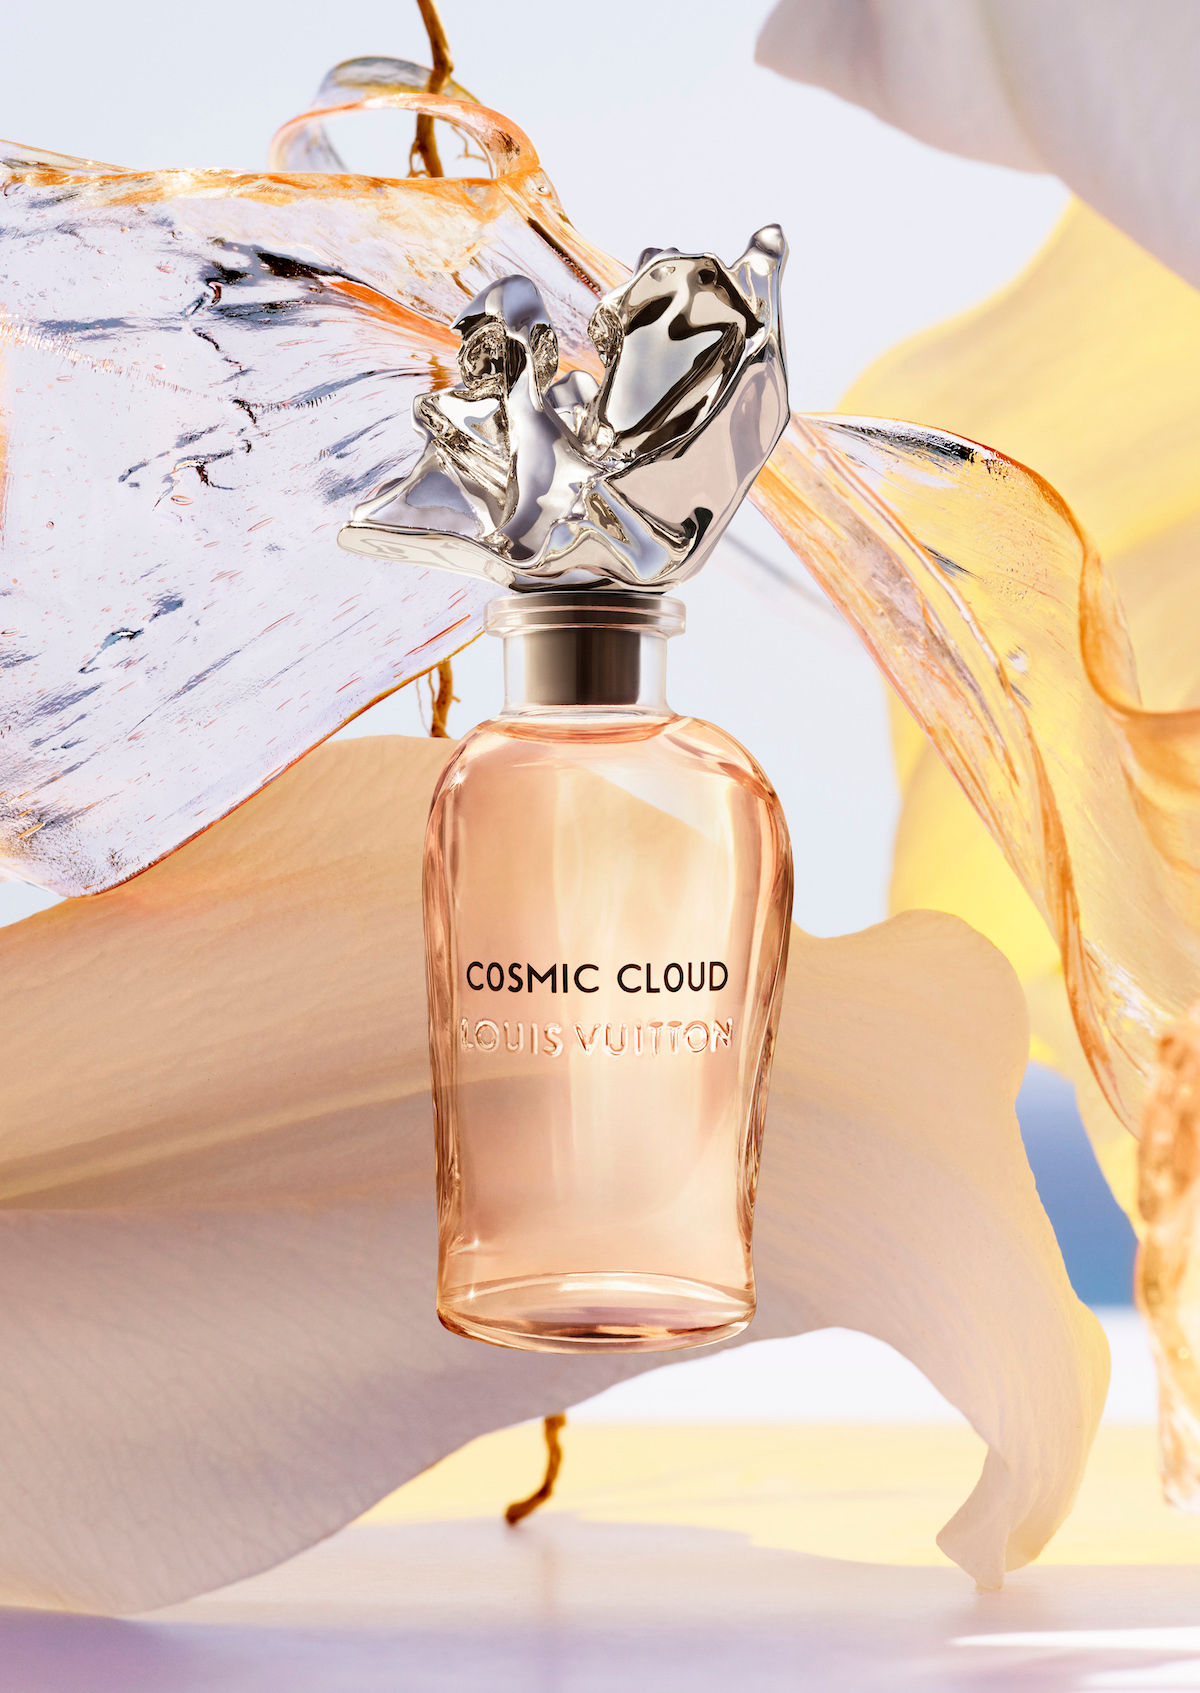 Fleur du Désert, the newest oud fragrance by Louis Vuitton's Master  Perfumer Jacques Cavallier Belletrud 